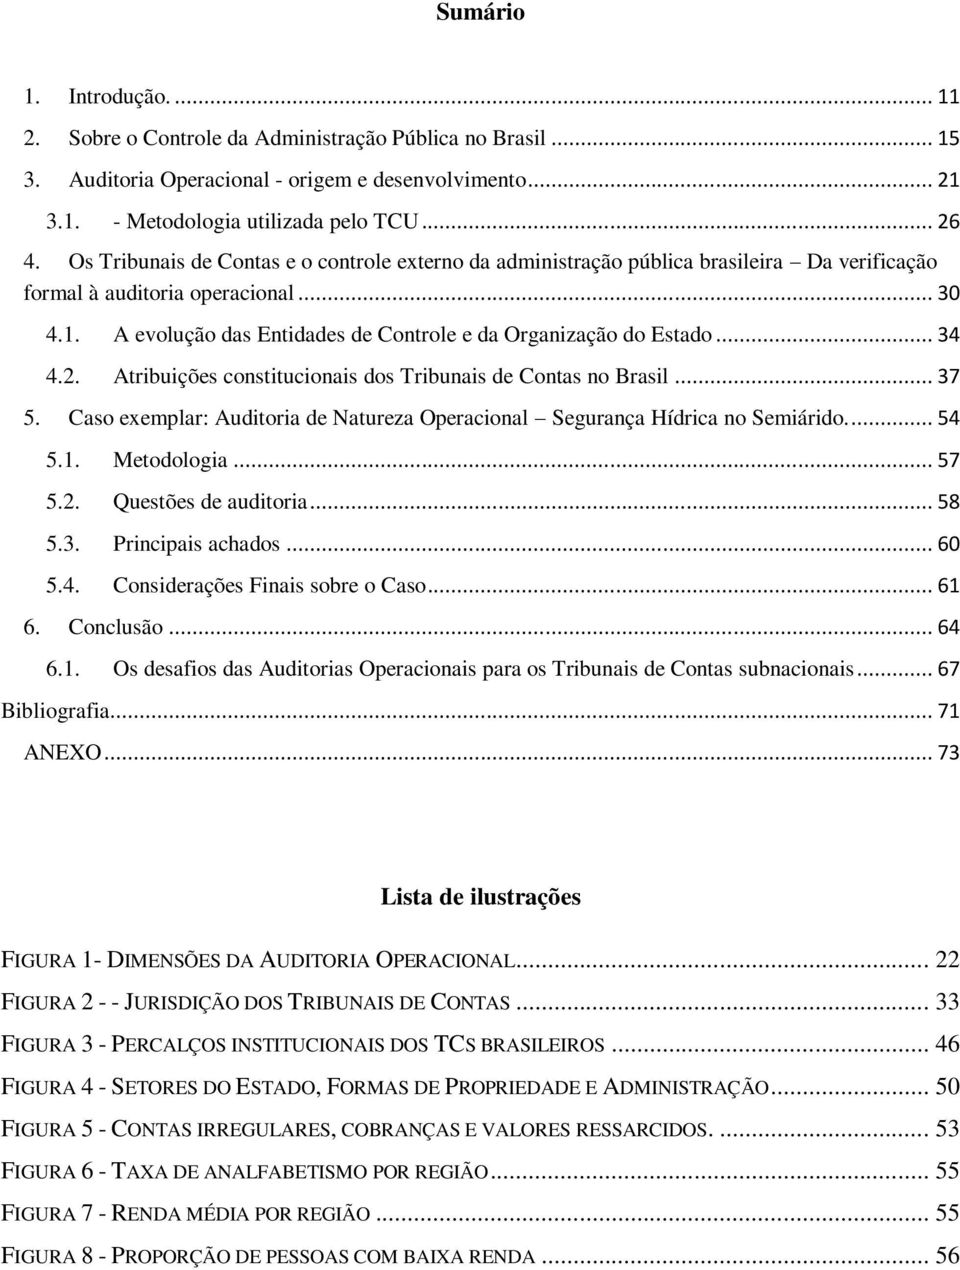 A evolução das Entidades de Controle e da Organização do Estado... 34 4.2. Atribuições constitucionais dos Tribunais de Contas no Brasil... 37 5.